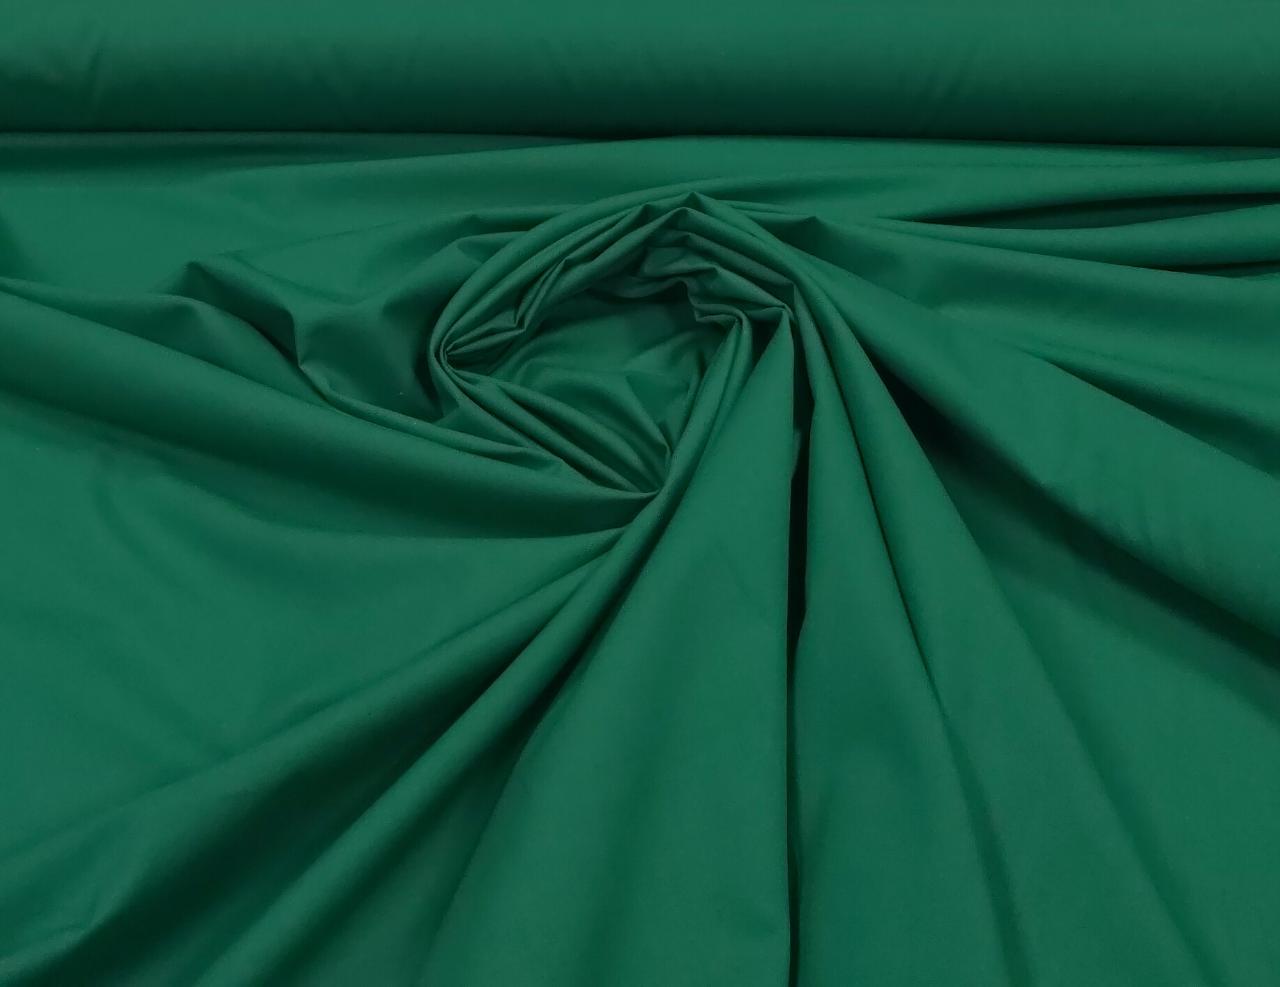 Tricoline Lisa Verde Bandeira Premium 100% Algodão